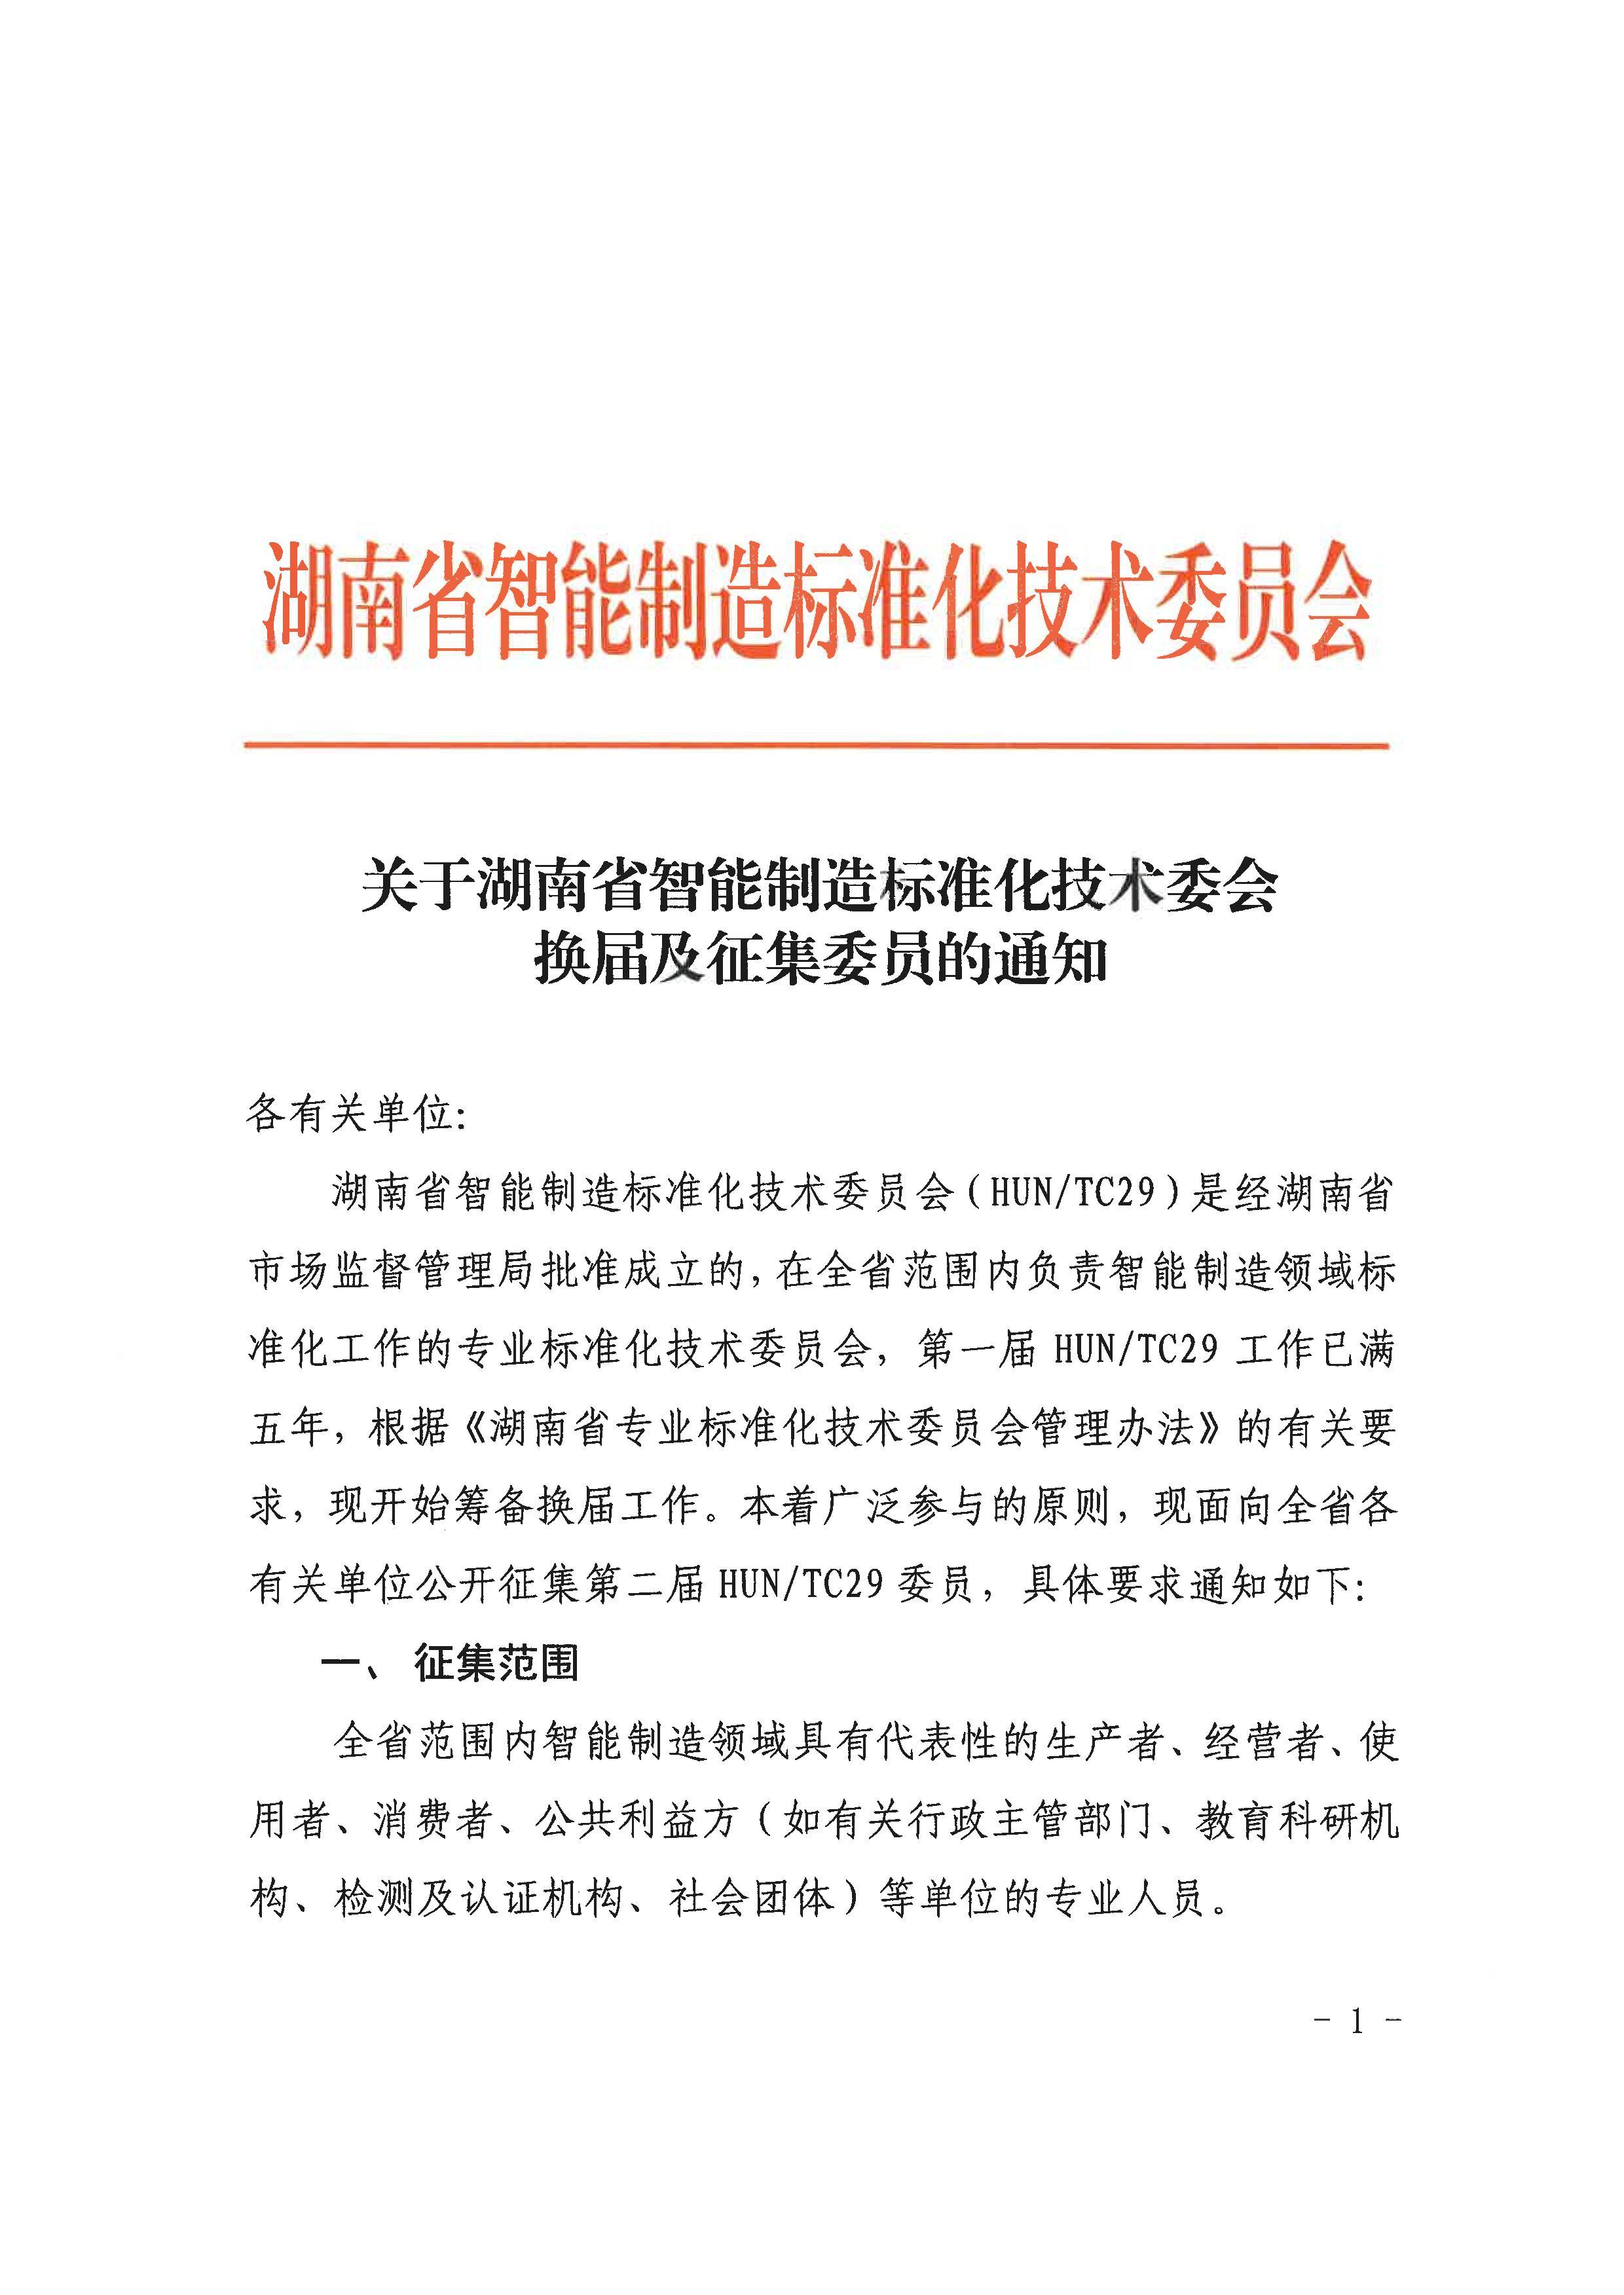 关于湖南省智能制造标准化技术委会换届及征集委员的通知